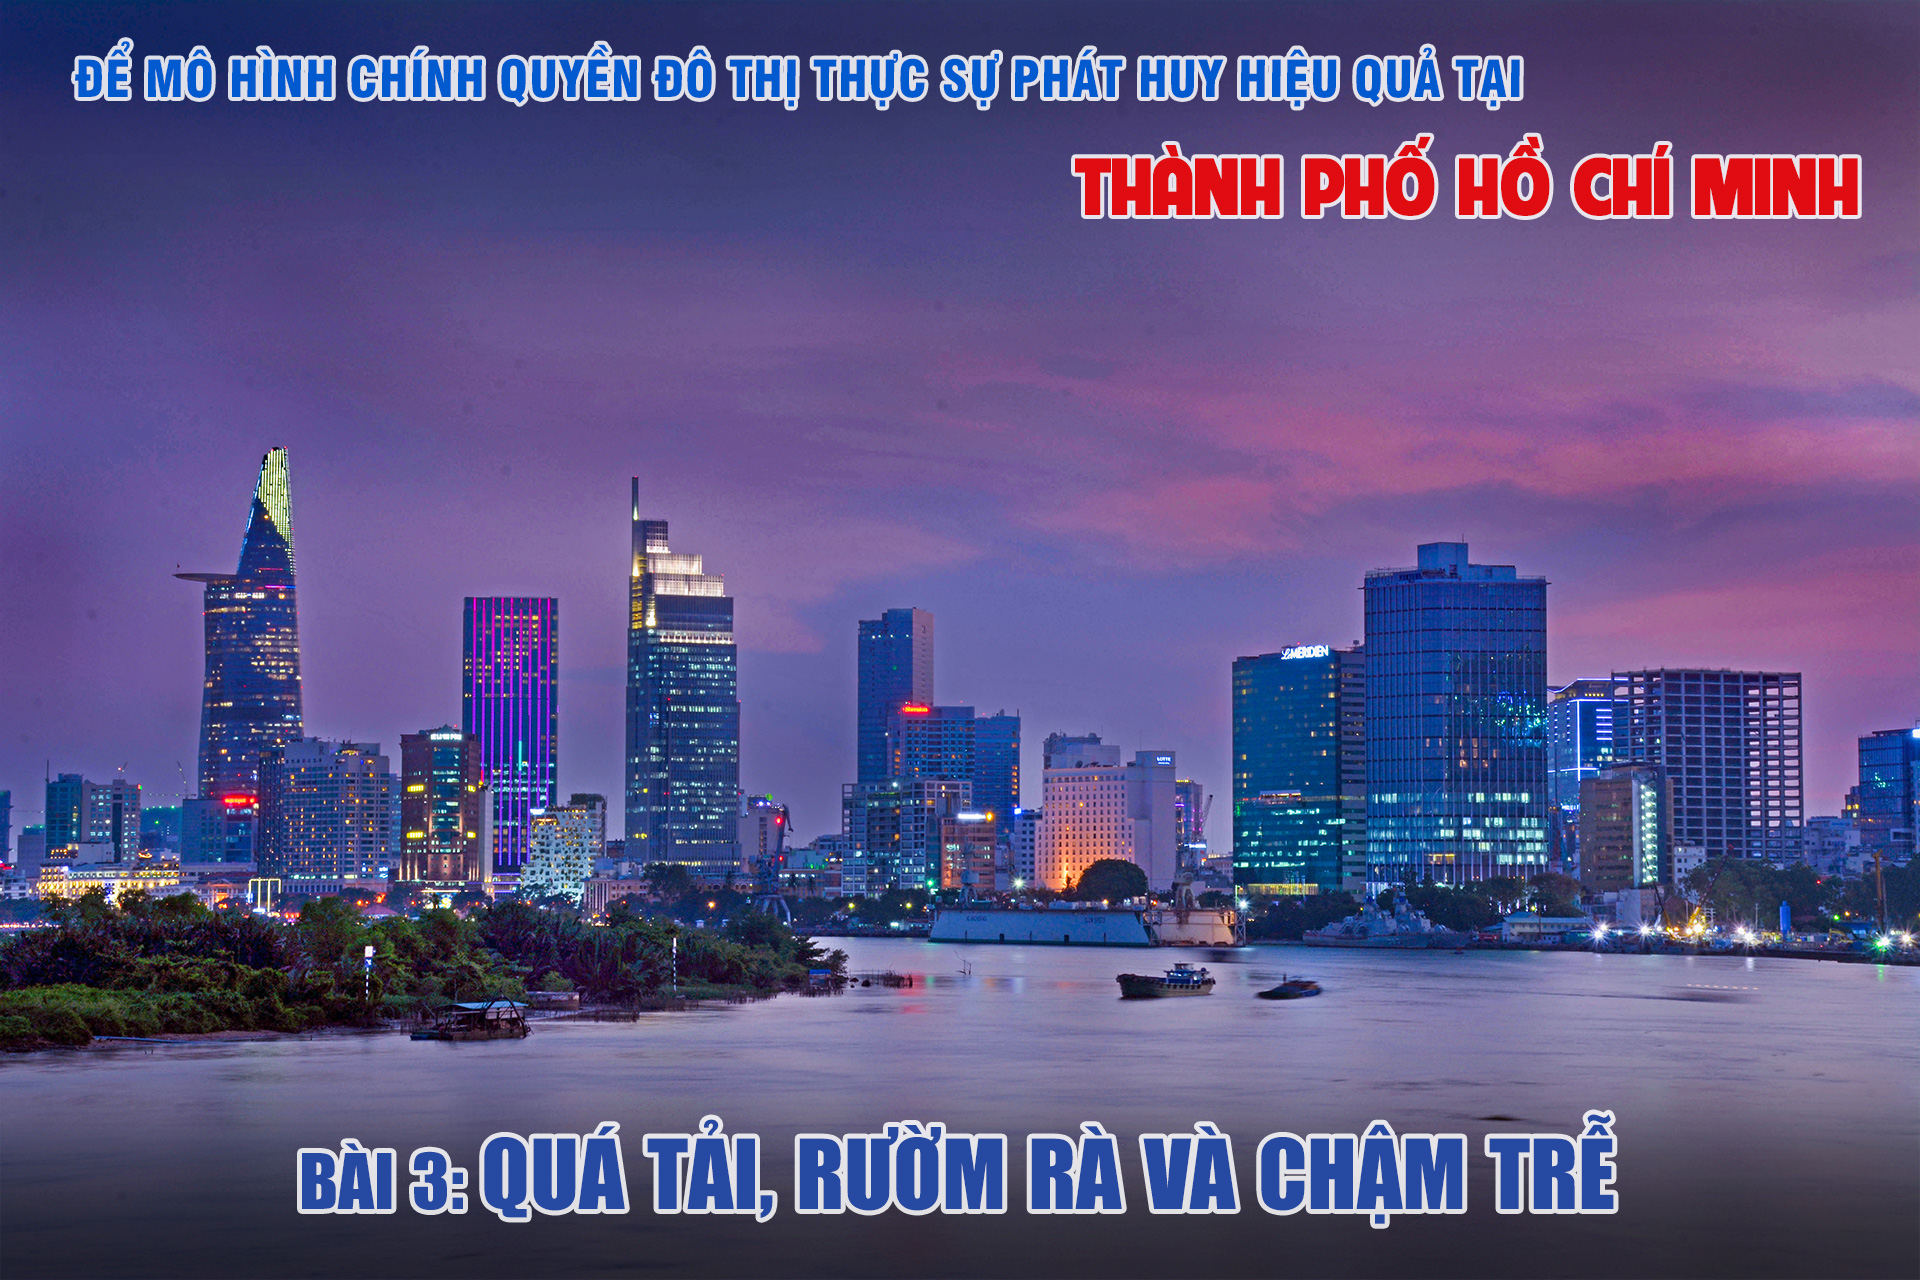 Để mô hình chính quyền đô thị thực sự phát huy hiệu quả tại Thành phố Hồ Chí Minh (Bài 3)